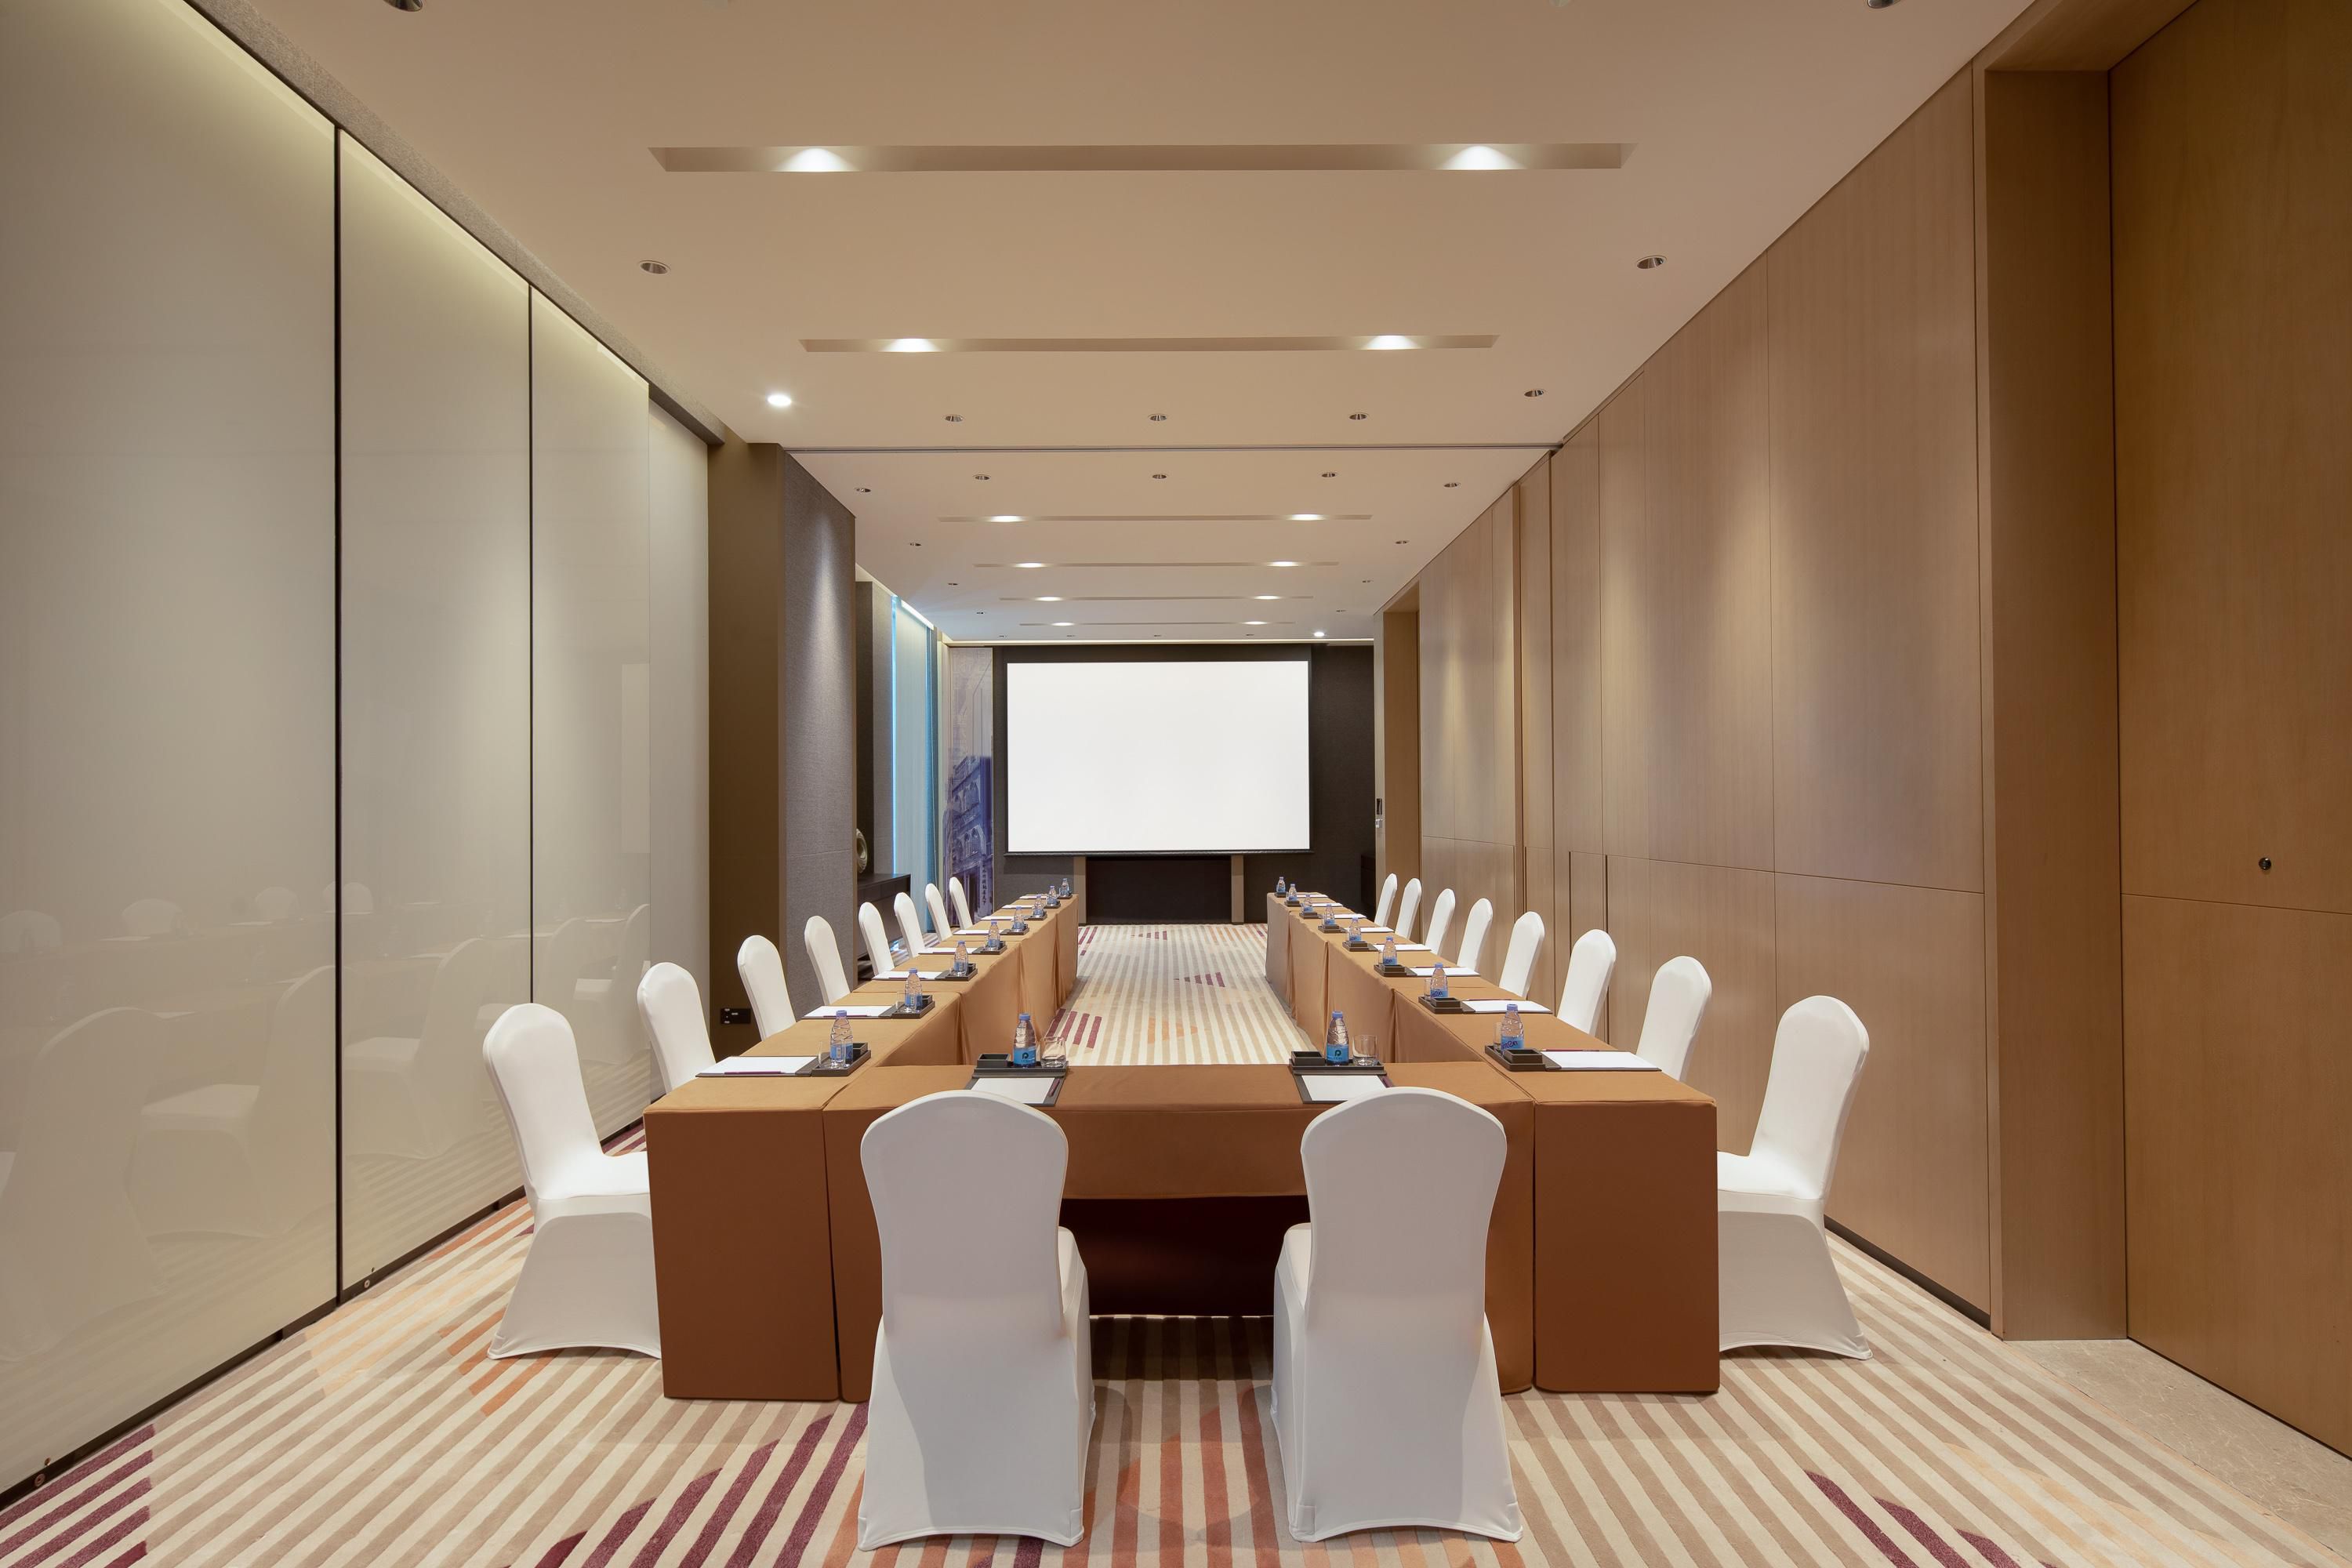 Meeting Room with U Shape Set-up